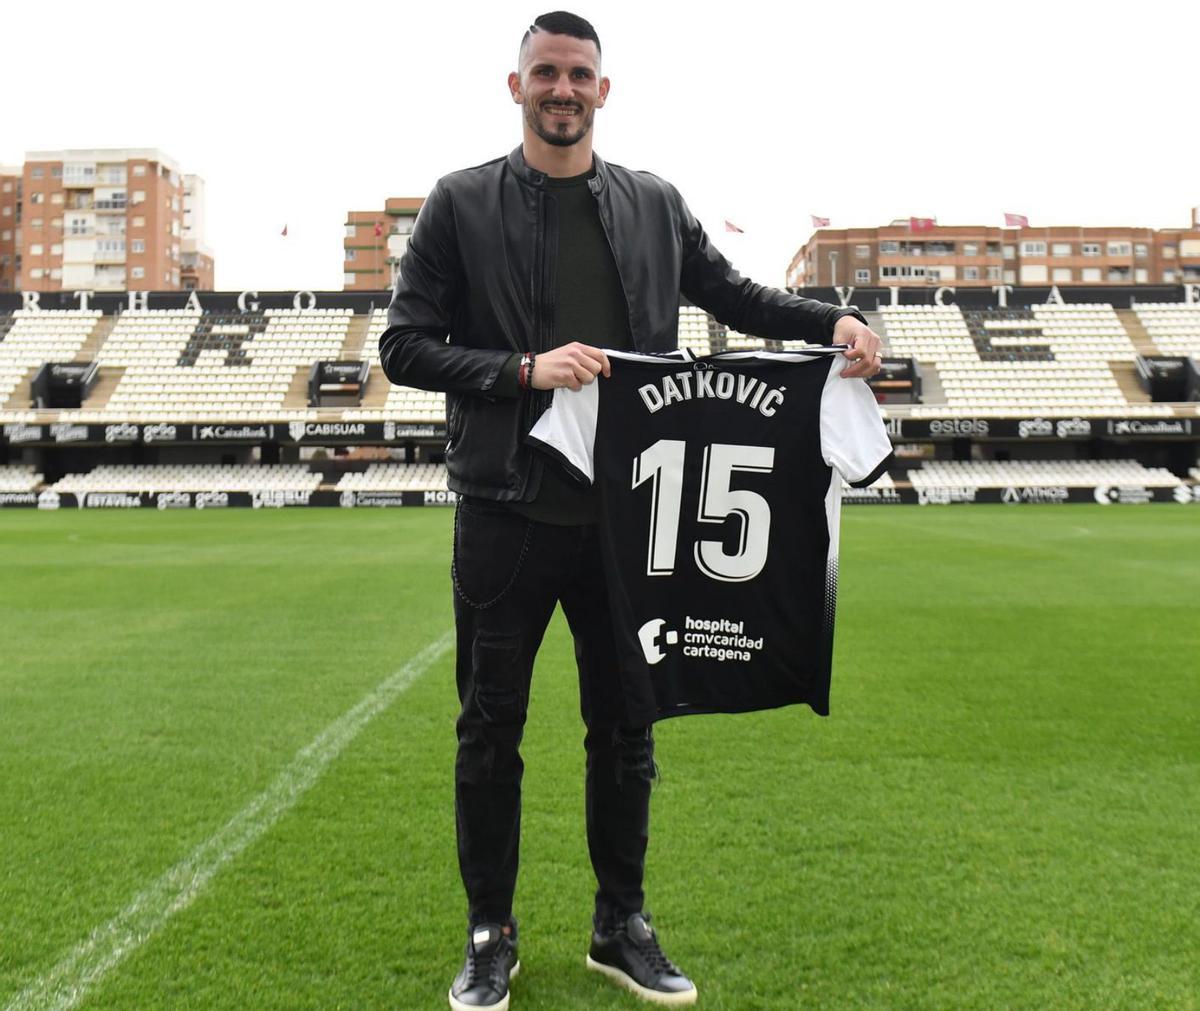 Datkovic, en su presentación oficial ayer como jugador del FC Cartagena. | FC CARTAGENA